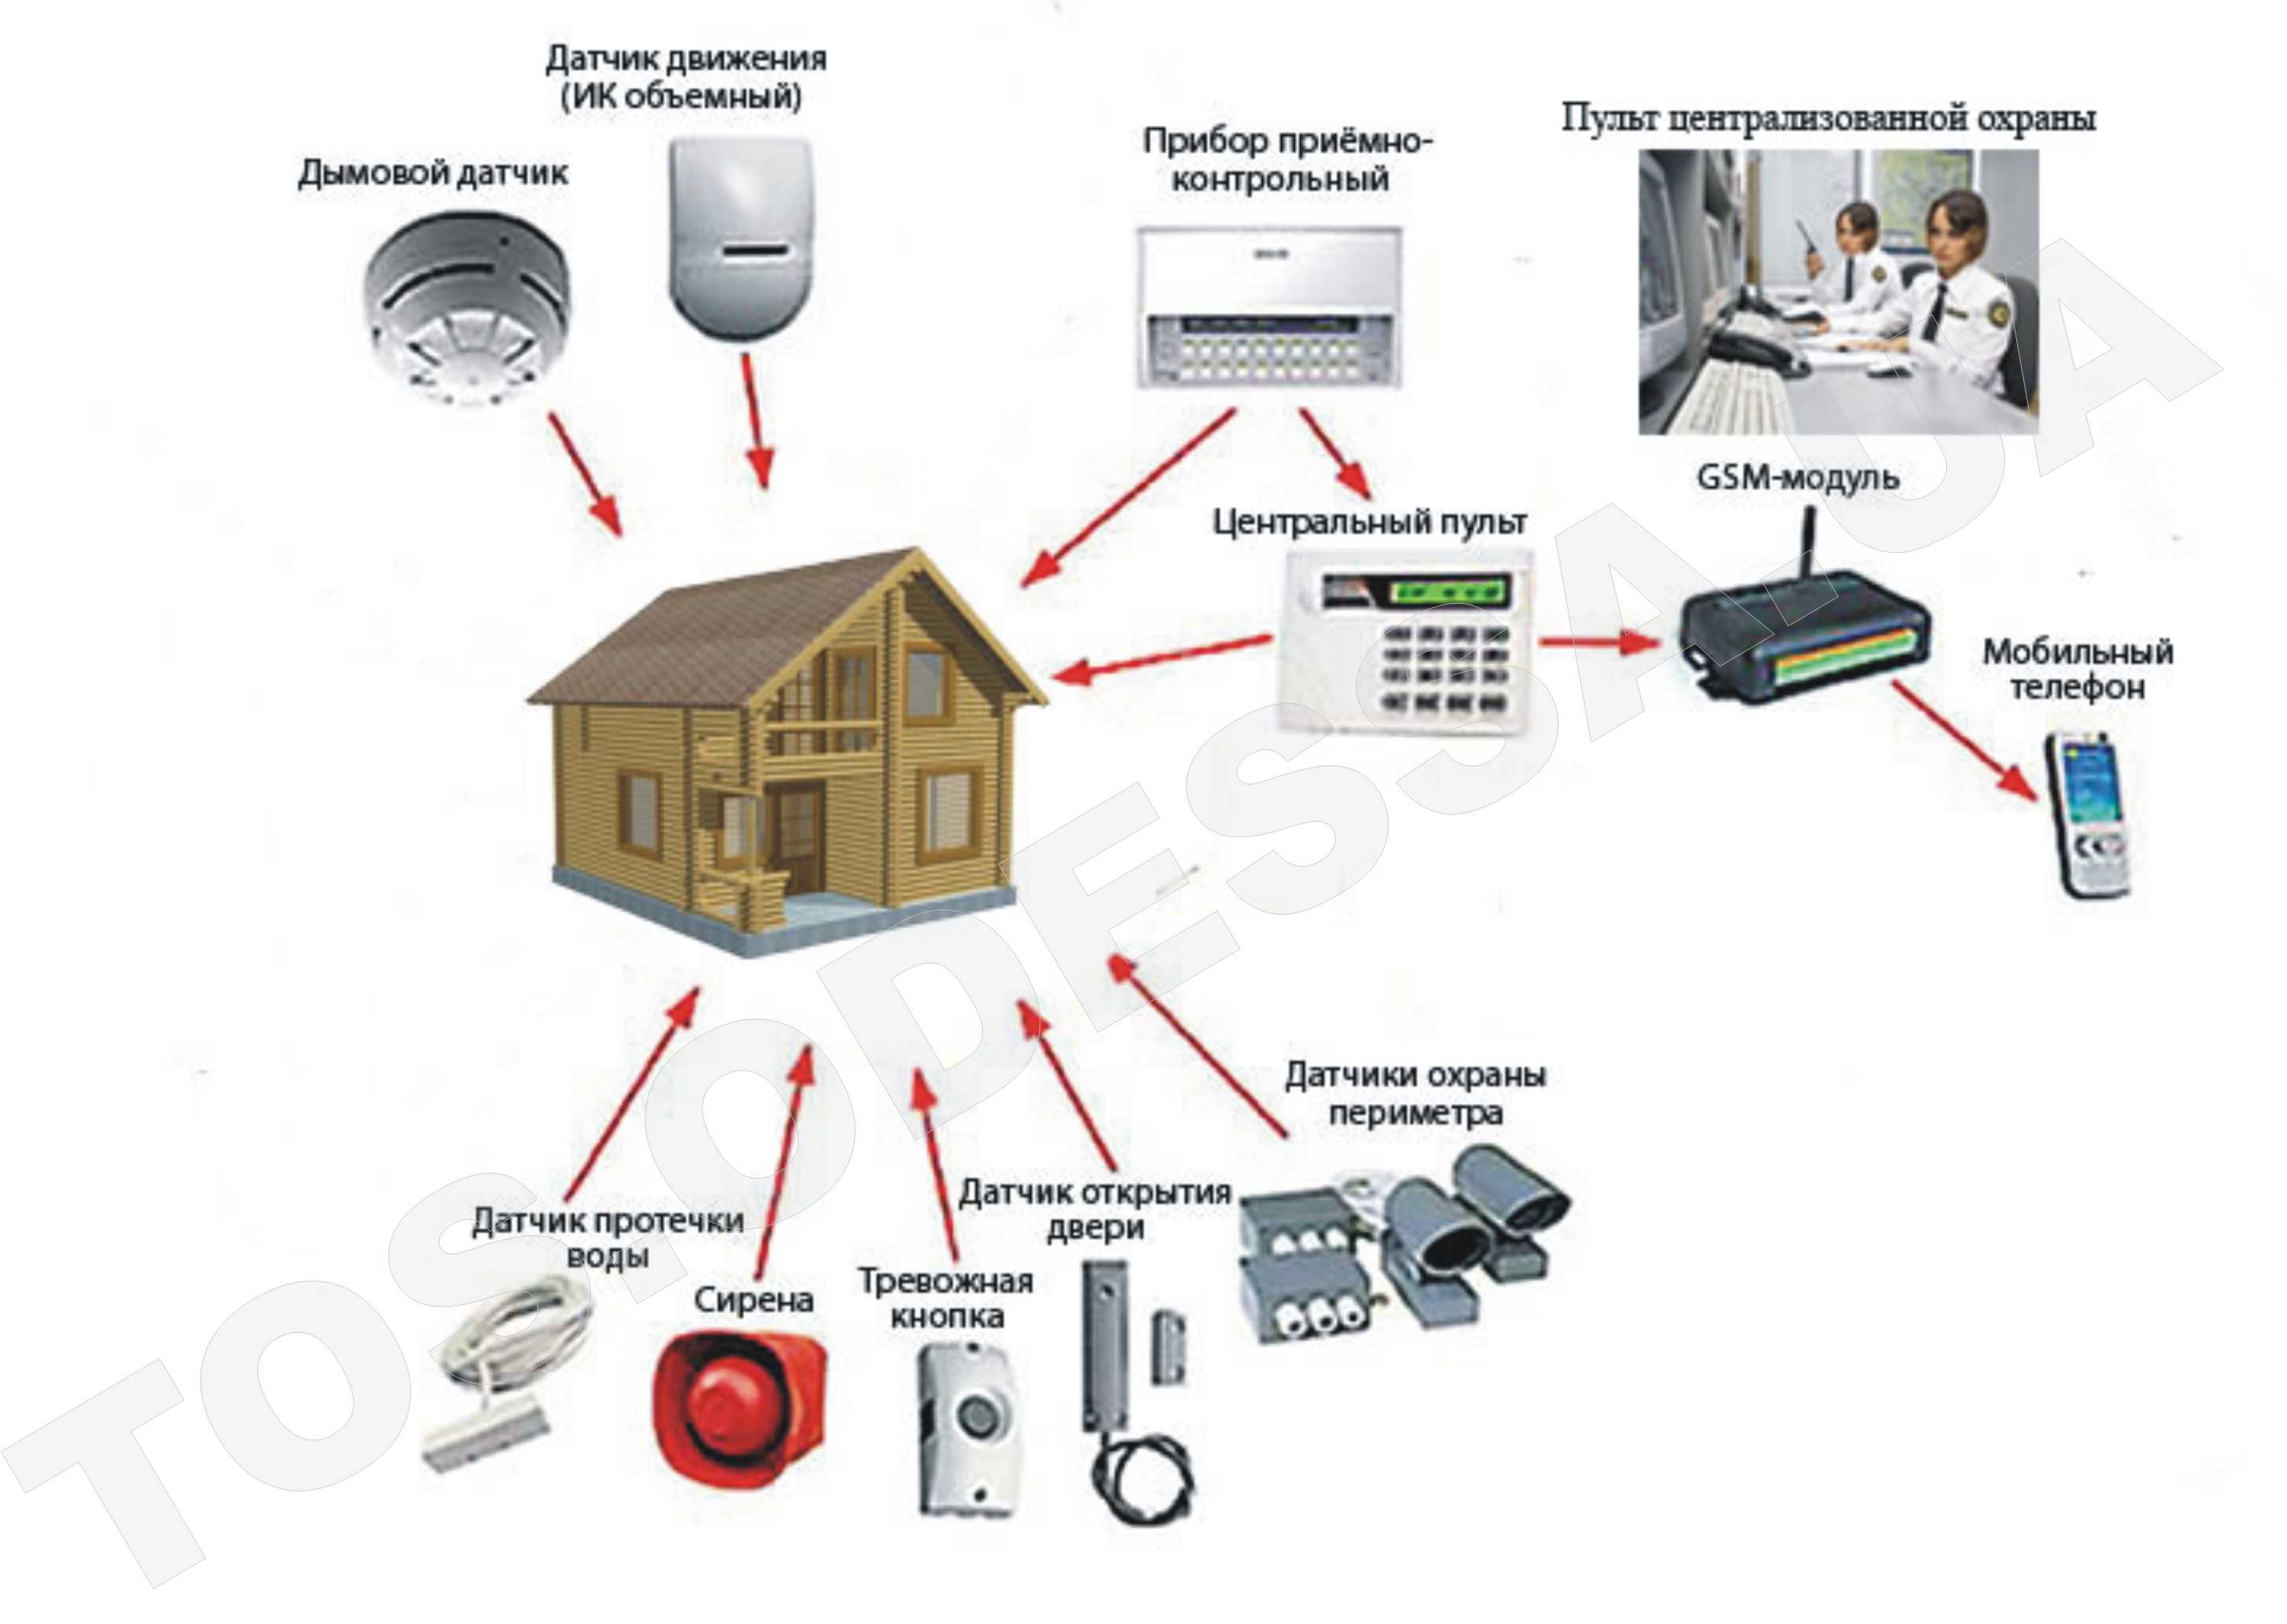 Датчик объема: выбор объемного датчика для охранной сигнализации и включения света, подключение и принцип работы